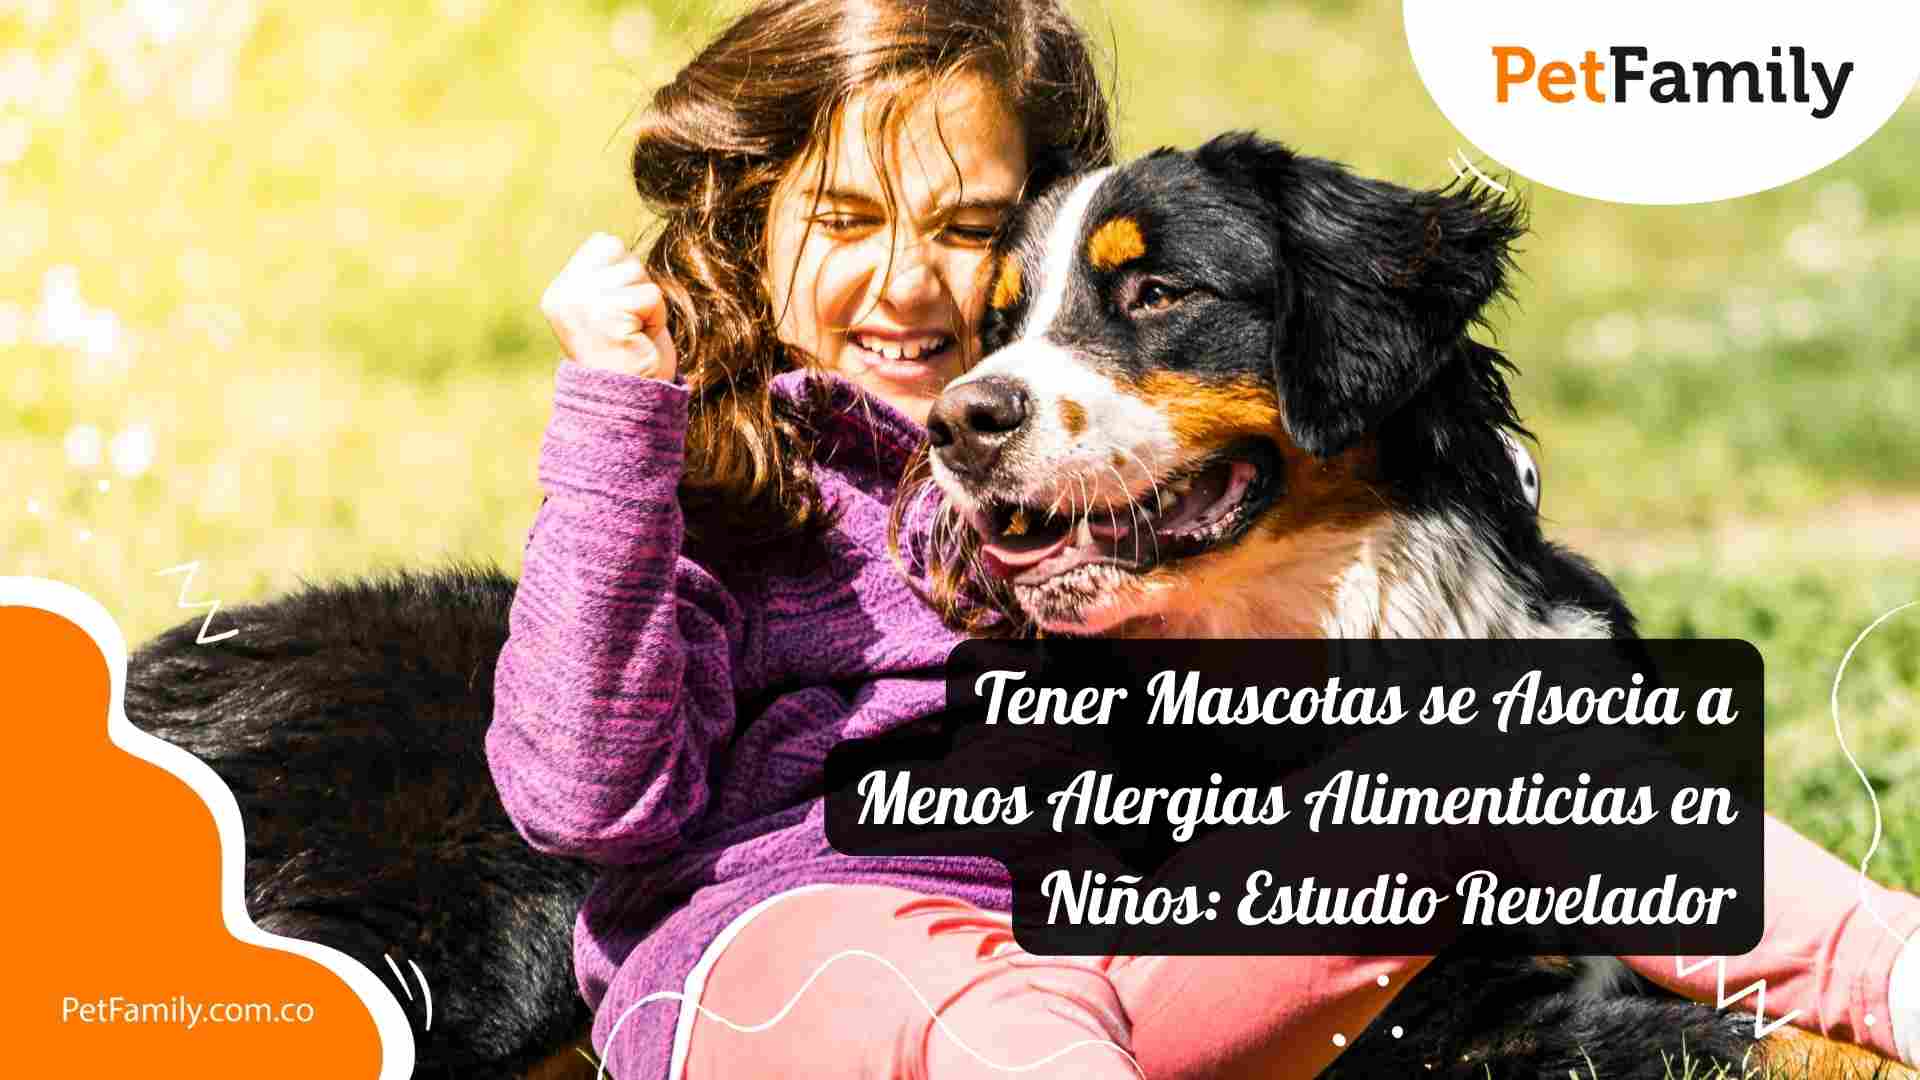 Tener Mascotas se Asocia a Menos Alergias Alimenticias en Niños: Estudio Revelador